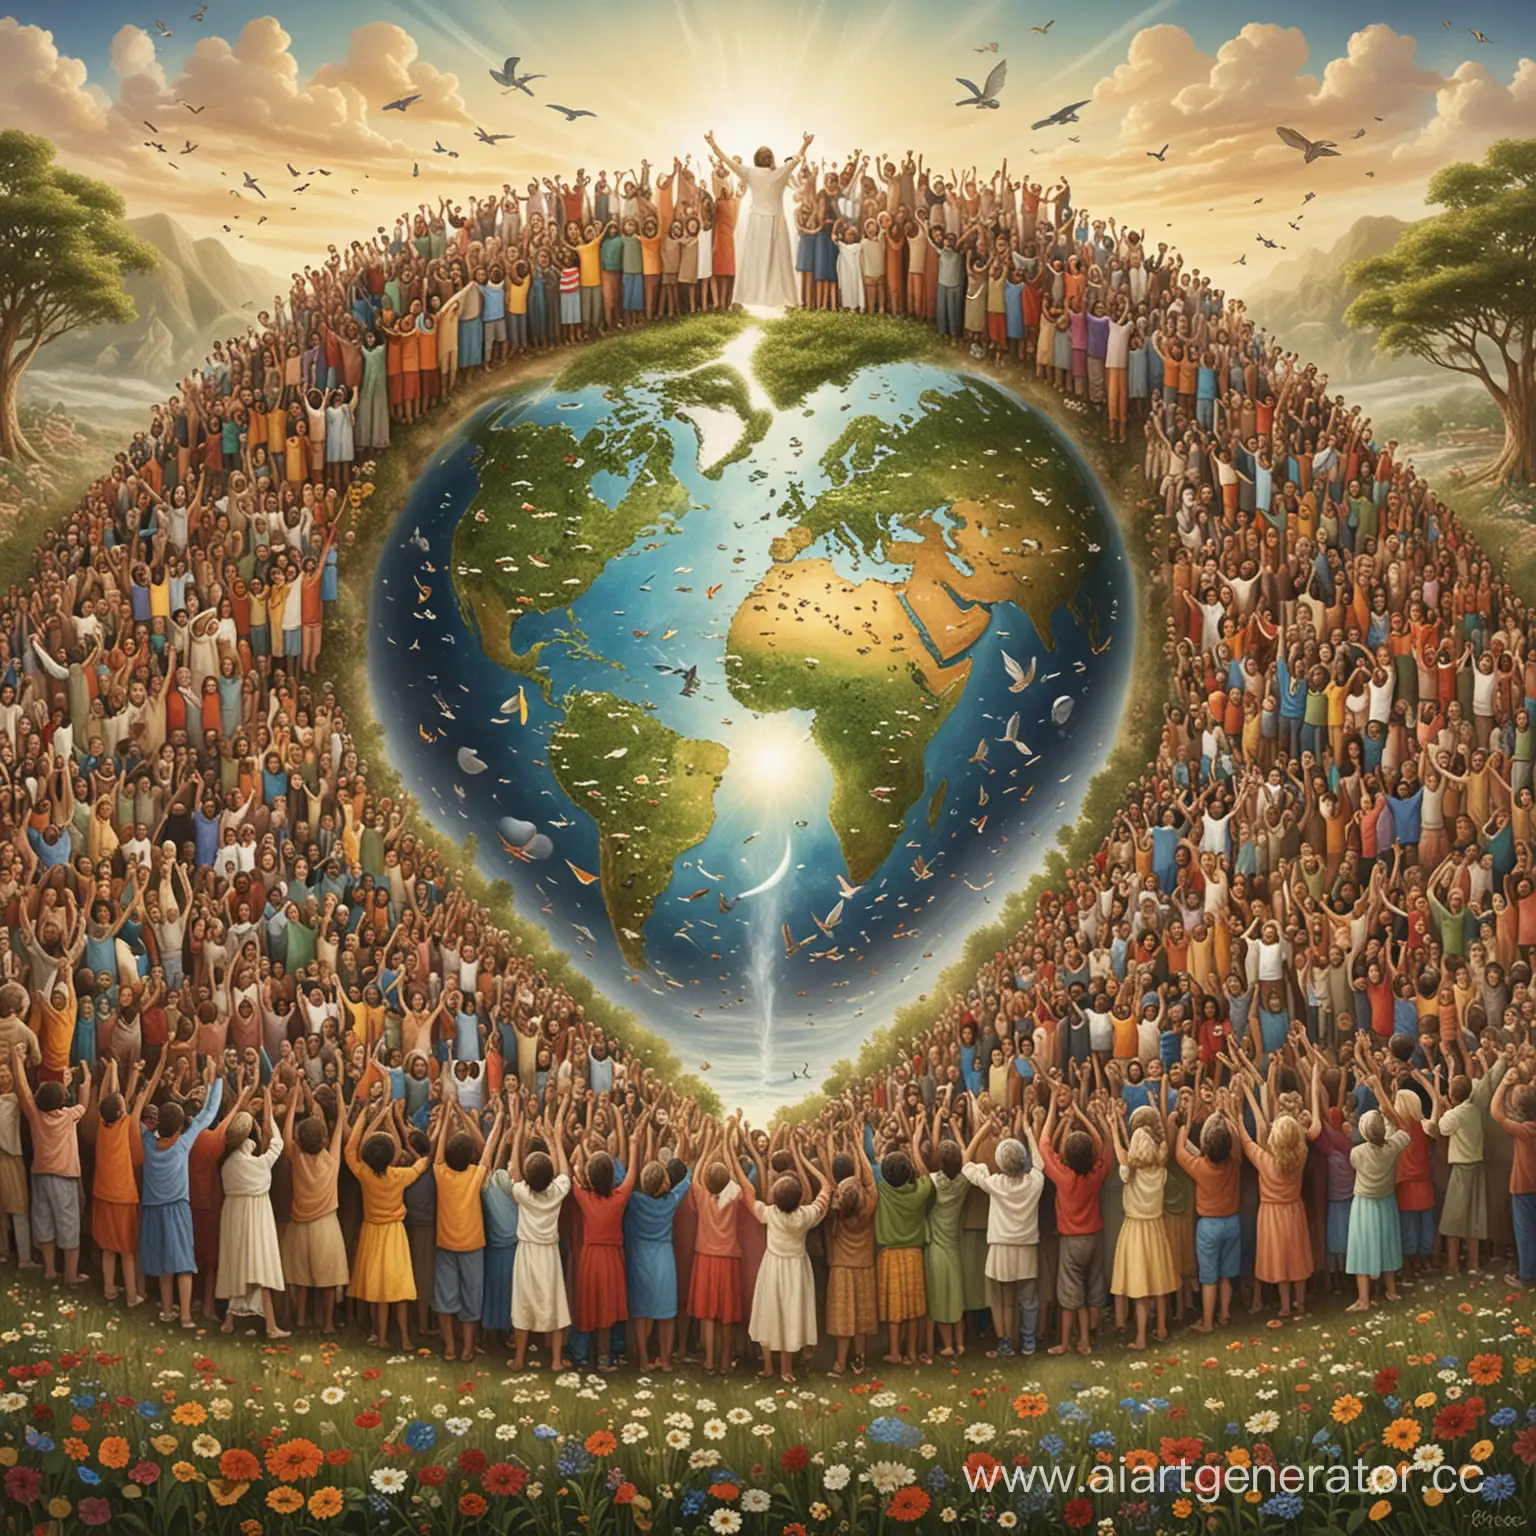 Представьте себе мир, где каждый человек признает себя частью общей планеты, домом для всех нас. В этом видении исчезает разделение и возникает глобальное сообщество, корнящееся во взаимном уважении и сострадании Мы становимся большой семьей, где каждый заботится о благополучии другого, где прогресс одного переводится в прогресс всех. Эта мечта о единстве и солидарности осуществима. Присоединяйтесь к Созидательному обществу и вместе давайте сделаем наш мир местом, где планета, дом, сообщество и семья синонимы любви и процветания.